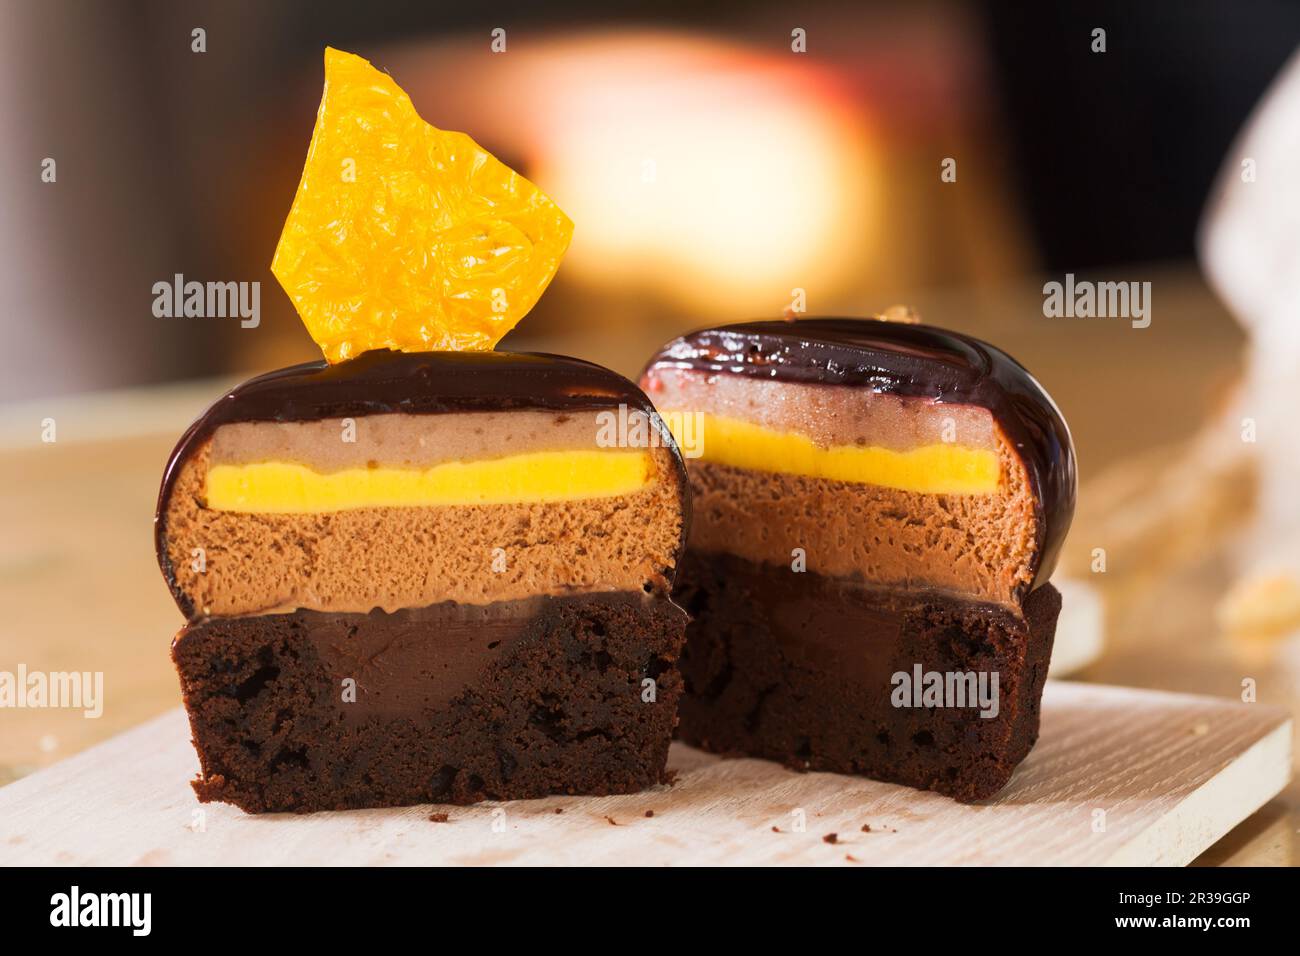 Die Hälfte des französischen Mousse-Portion-Kuchens ist mit Schokoladenglasur bedeckt Stockfoto